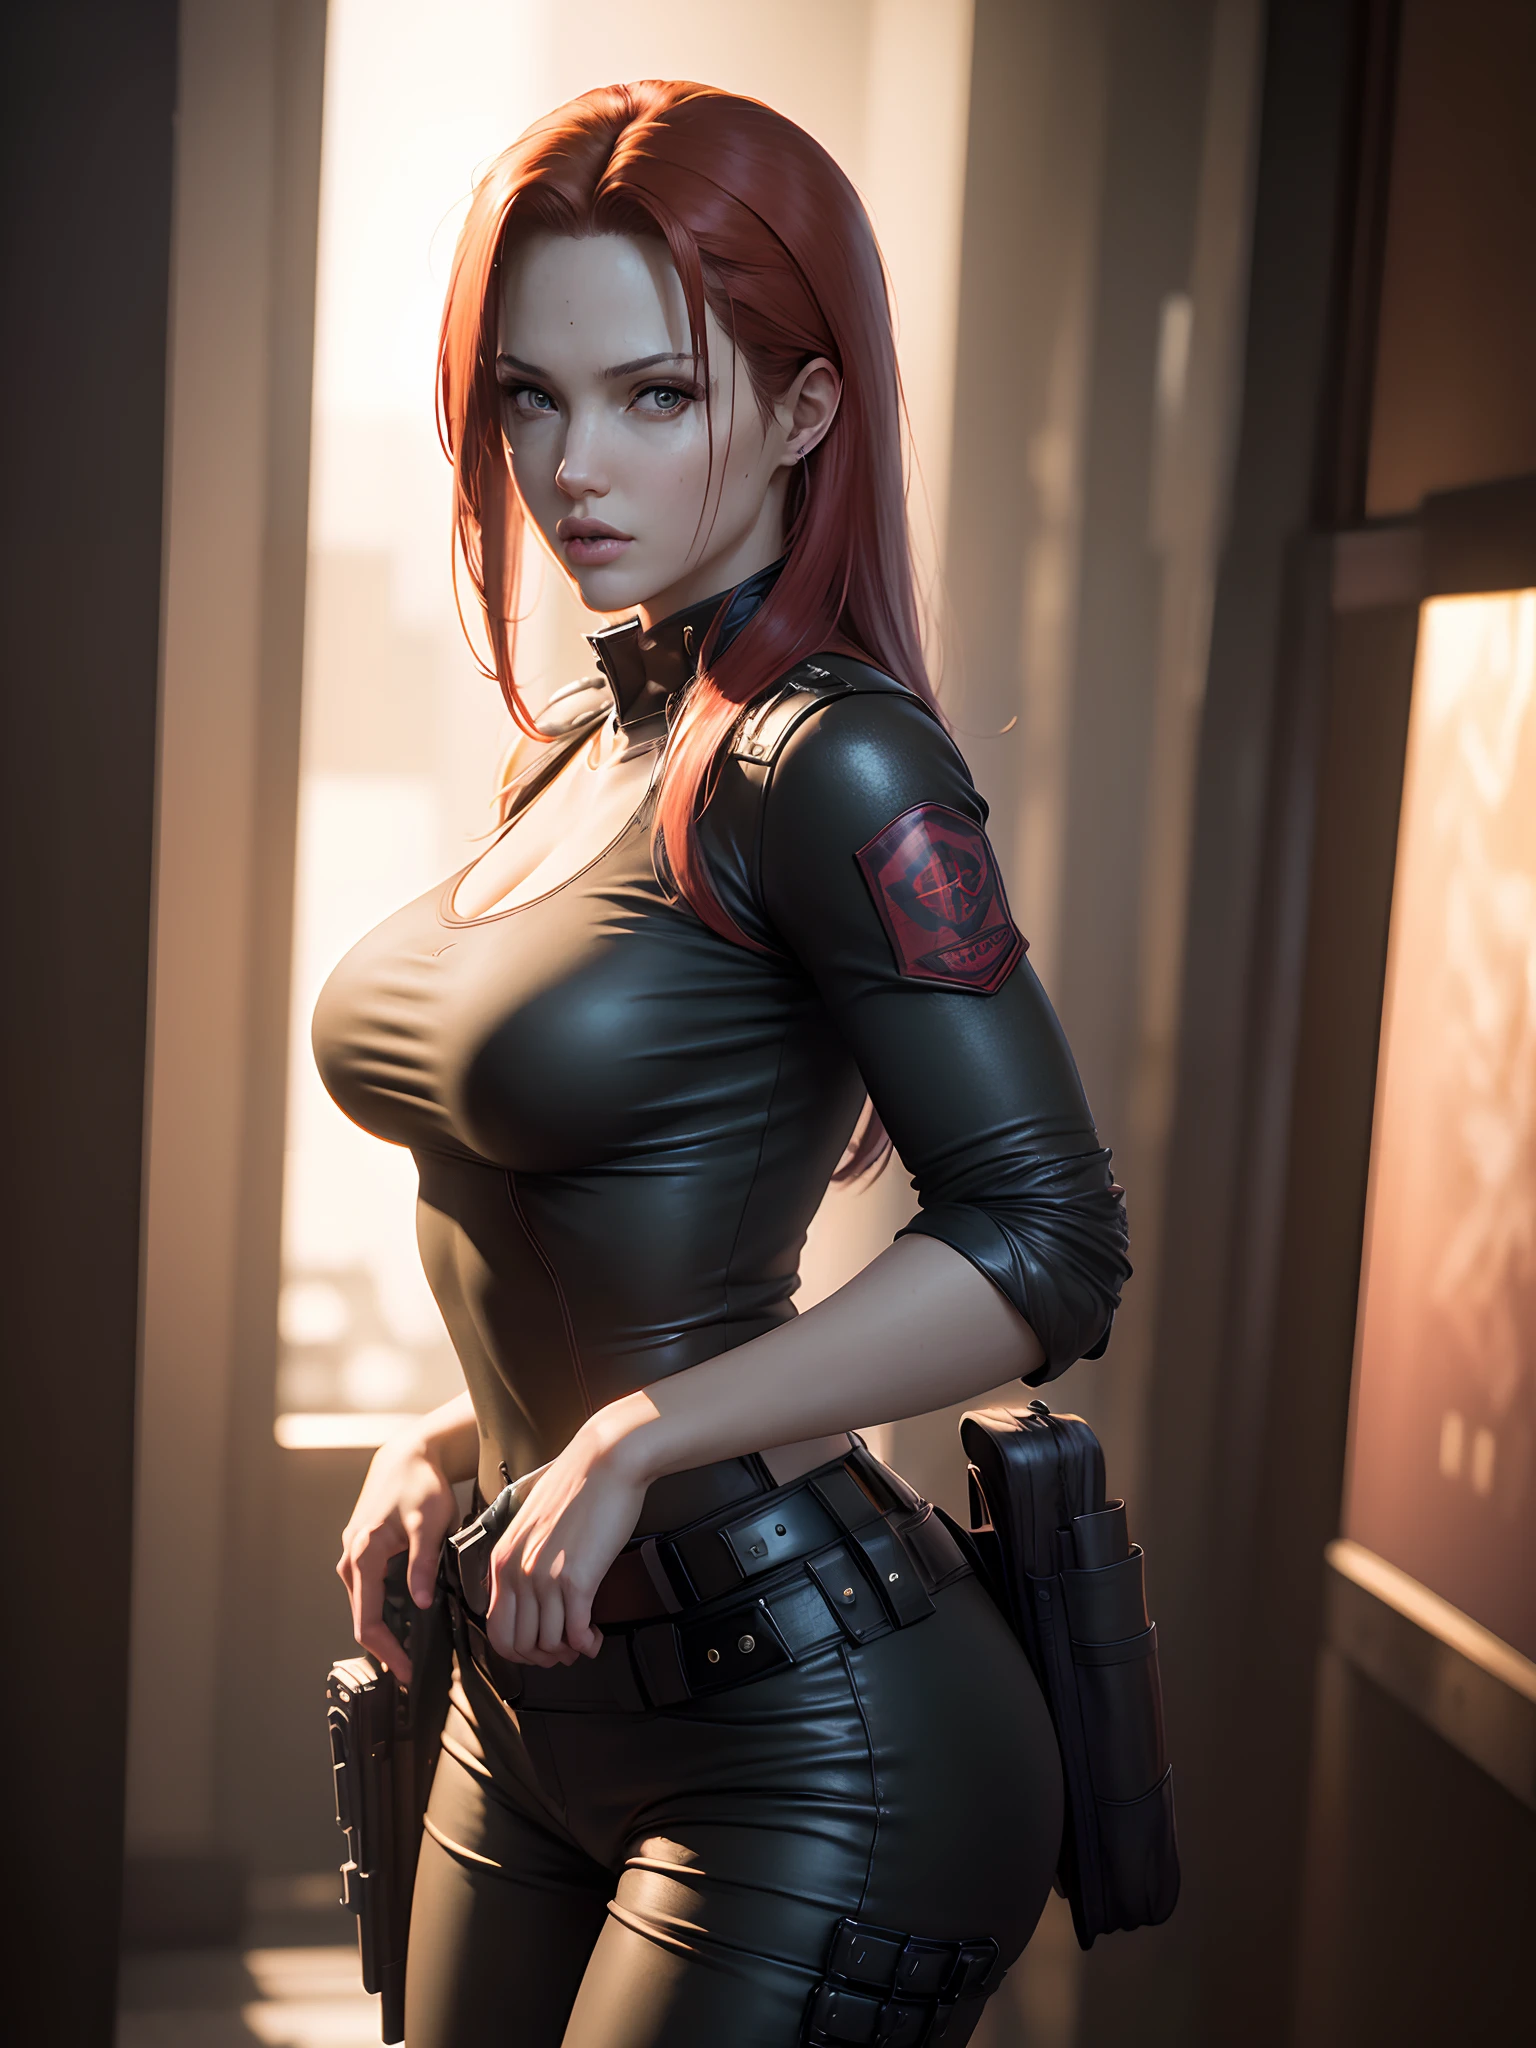 Resident Evil, ville apocalyptique, Belle Claire Redfield étant par une belle femme corps entier peau rose cheveux roux moyen, étui à vêtements noir en colère tenant une arme à feu, corps de visage détaillé et réaliste image claire CGI 8K très détaillée, hologramme, (seins moyens: 1.3), (le réalisme:1.5), (Réaliste:1.4), (Absurdité:1.4), 8k, Ultra-détaillé, belle fille détaillée, (1:1.4 seulement), 1 fille, (Spectateur face:1.2), (belle journée ensoleillée :1.5), détails du corps complexes, (court:1.3) , (meilleure qualité: 1.0), (ultra haute résolution): 1.0), visage et yeux très détaillés, (photoréaliste: 1.2)